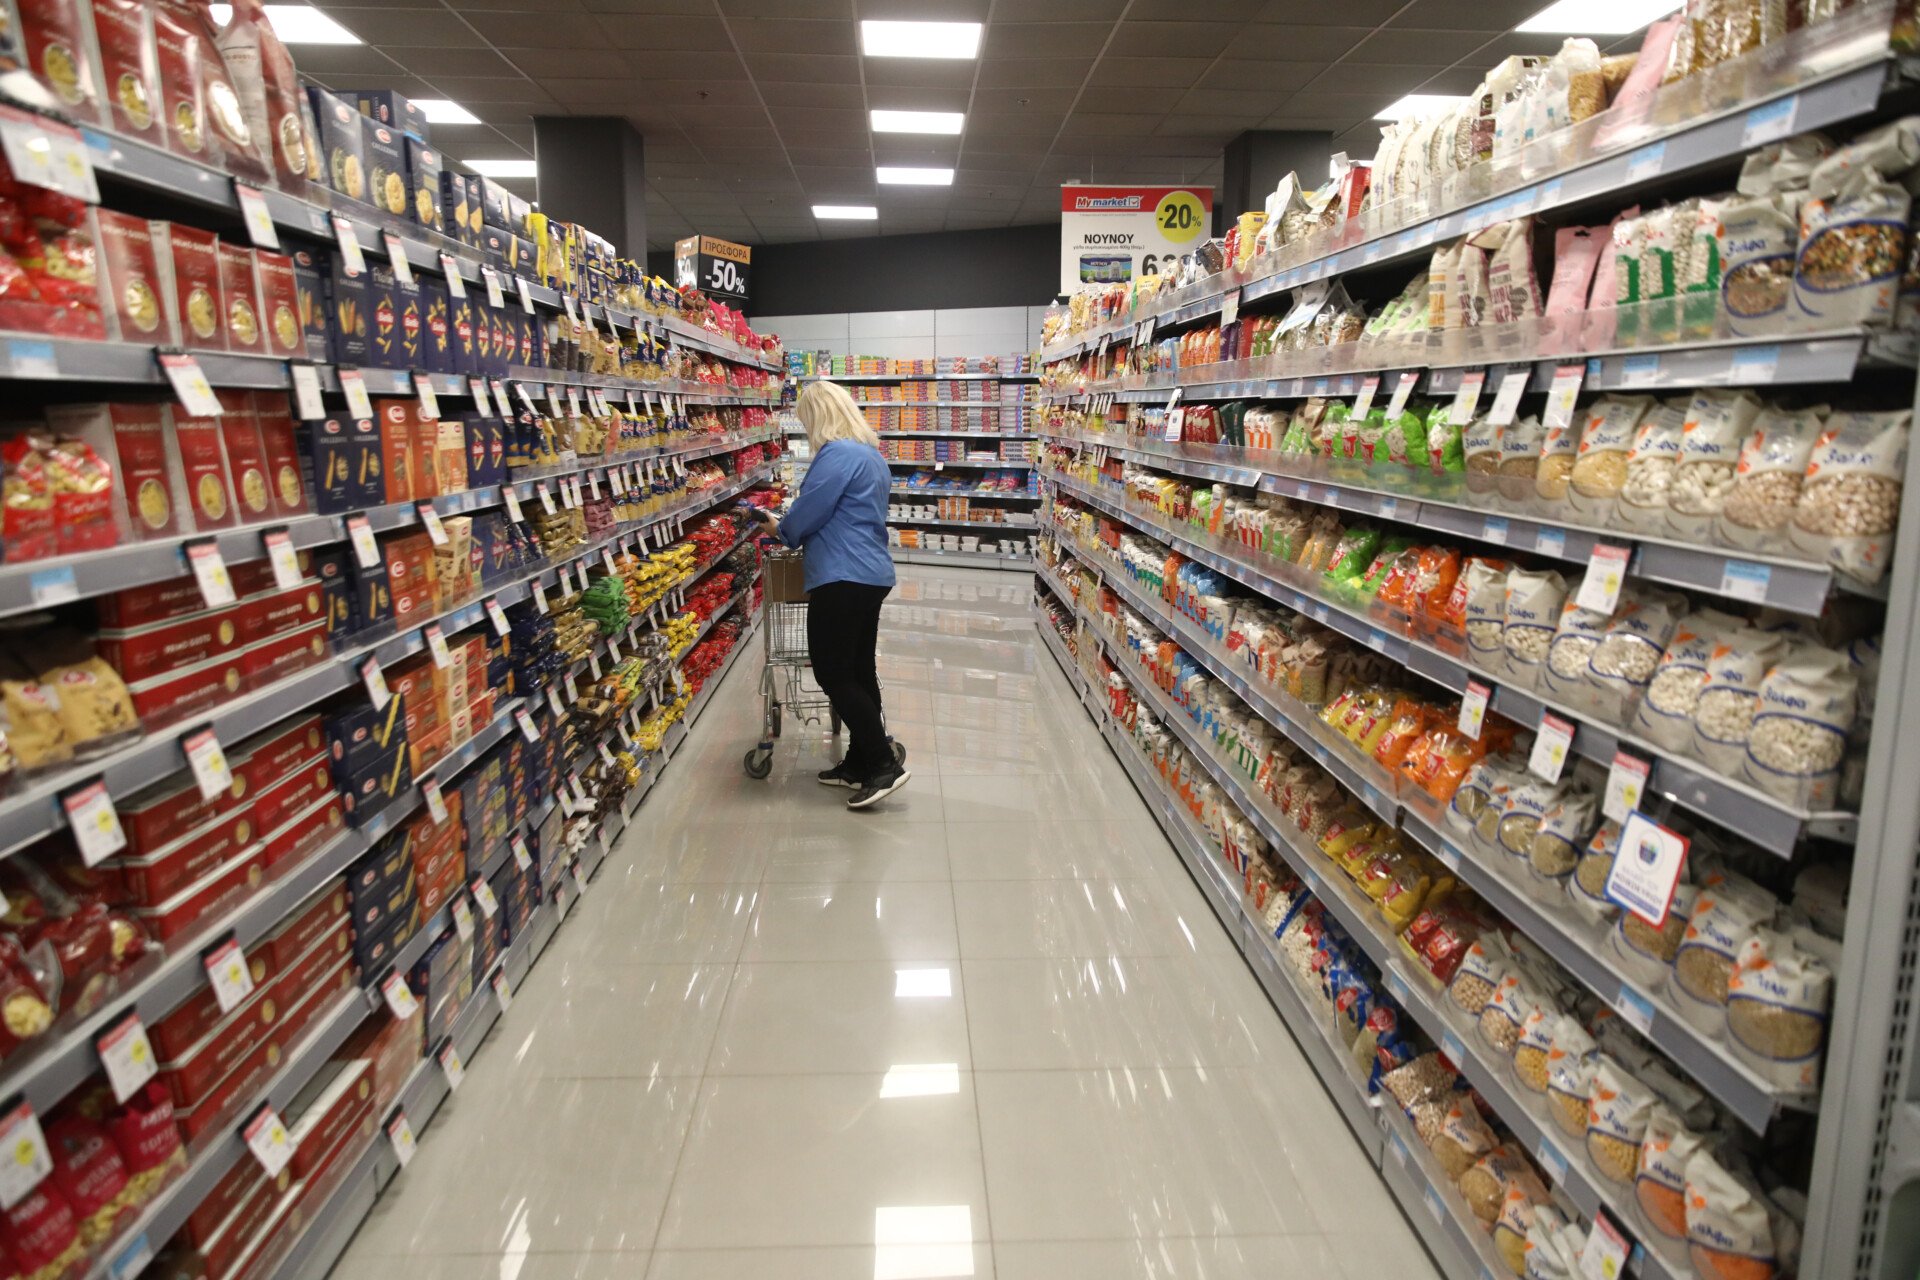 συριζα: οι χώρες που μηδένισαν τον φπα στα βασικά αγαθά περνούν σε αρνητικό πληθωρισμό τροφίμων